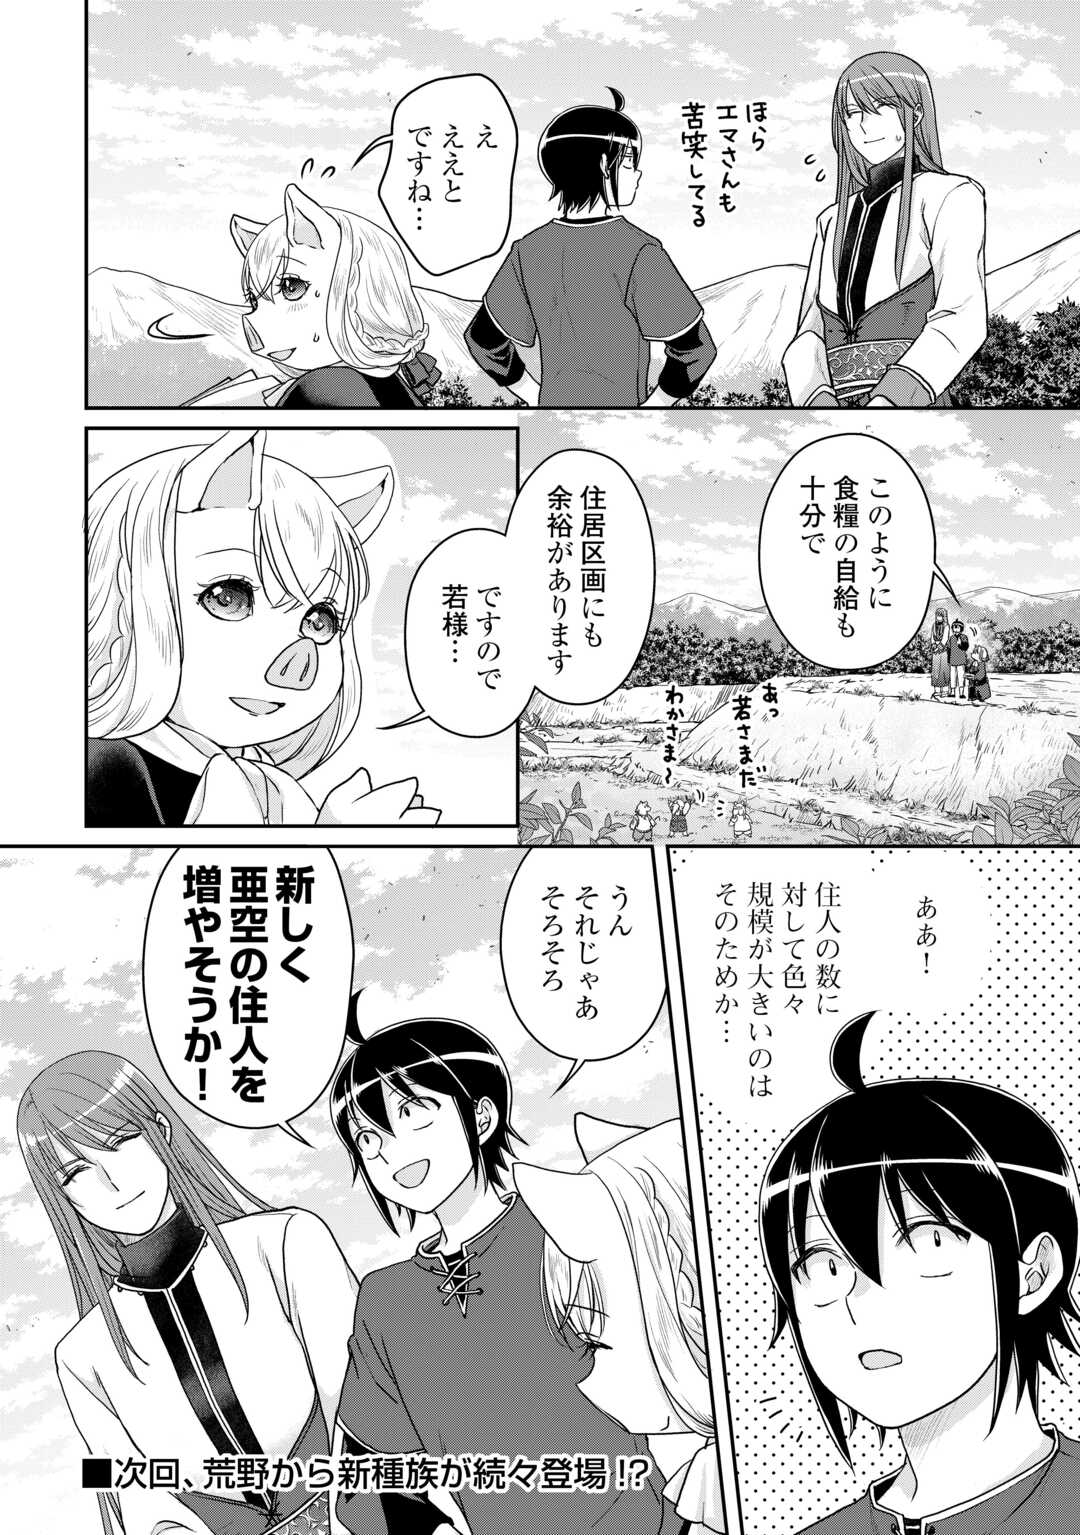 Tsuki ga Michibiku Isekai Douchuu - Chapter 94 - Page 24